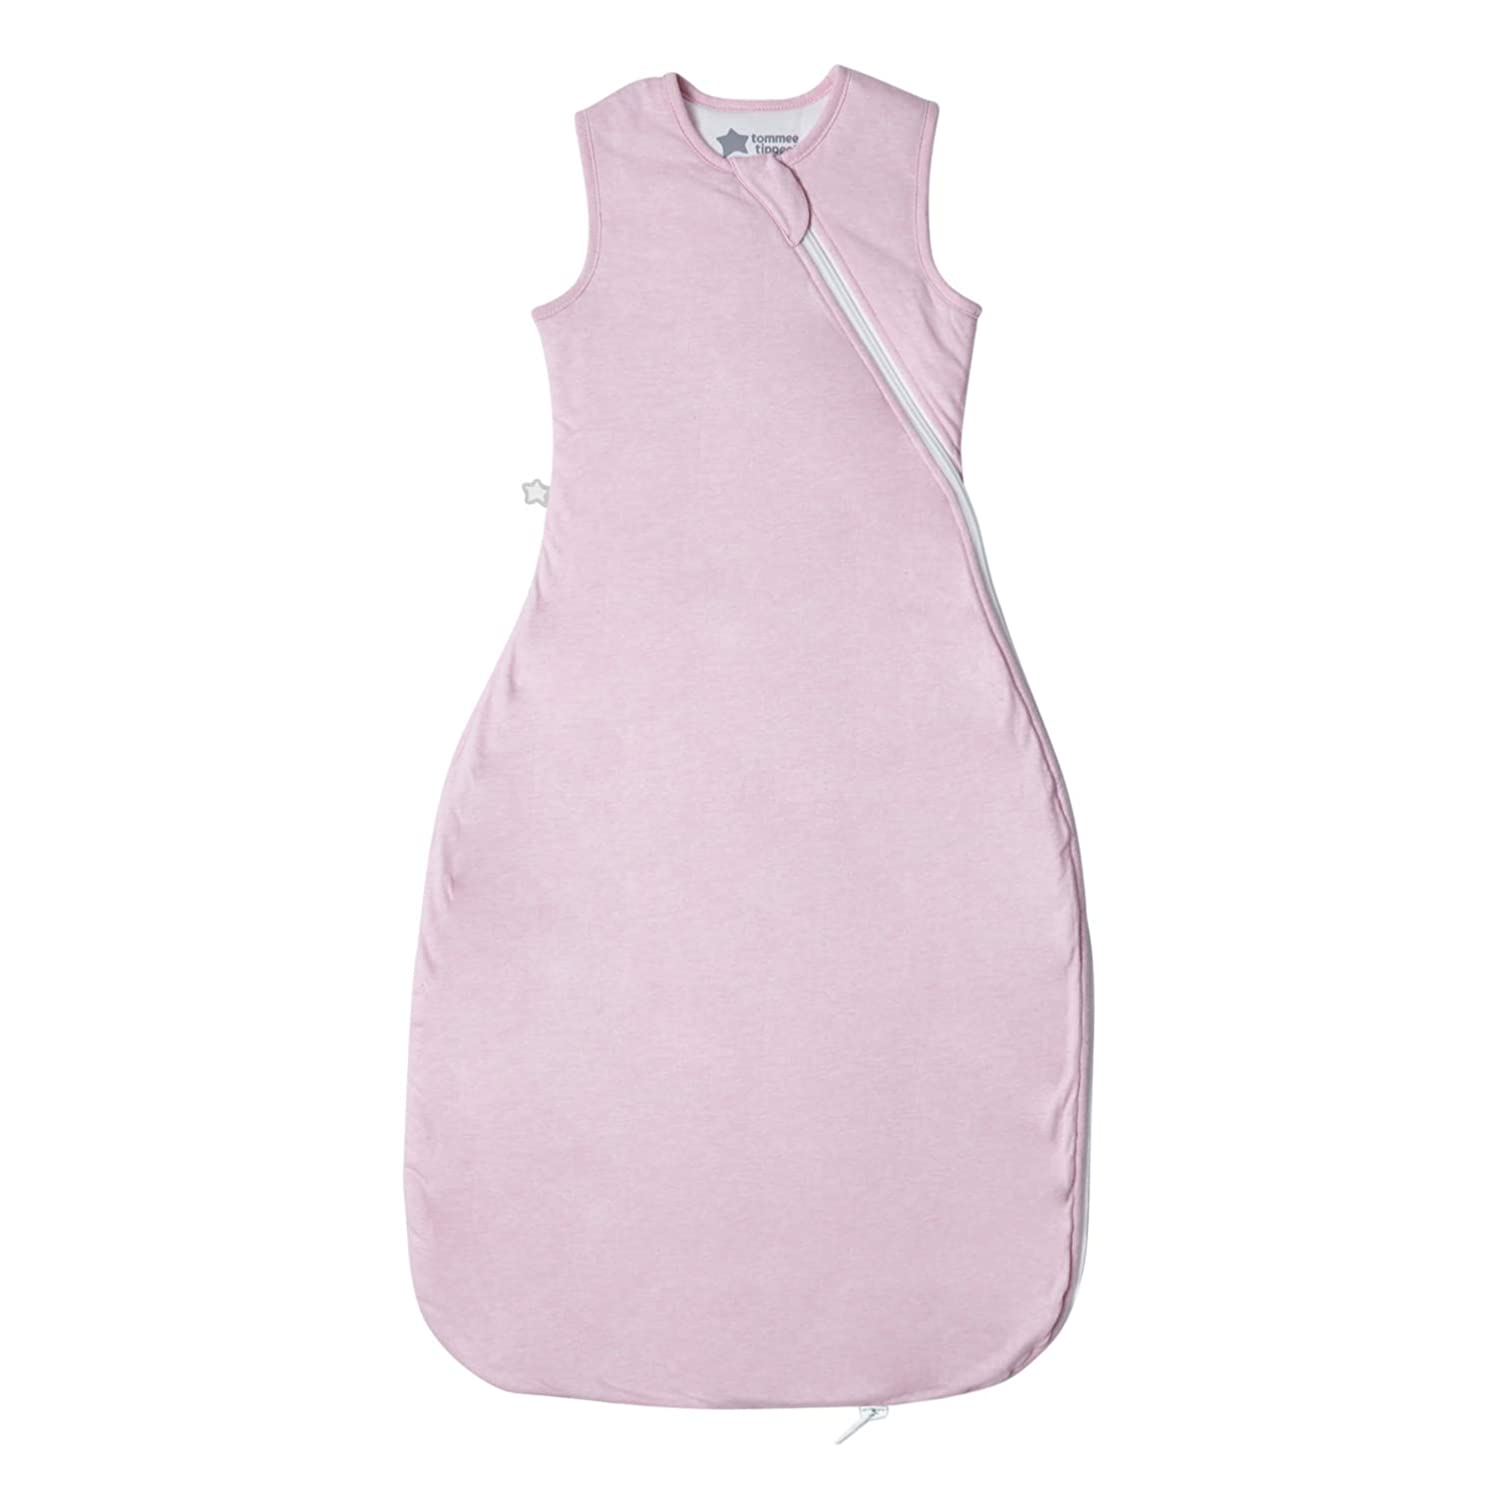 Tommee Tippee The Original Grobag Baby Sleeping Bag 6-18m 1 Tog, Pink